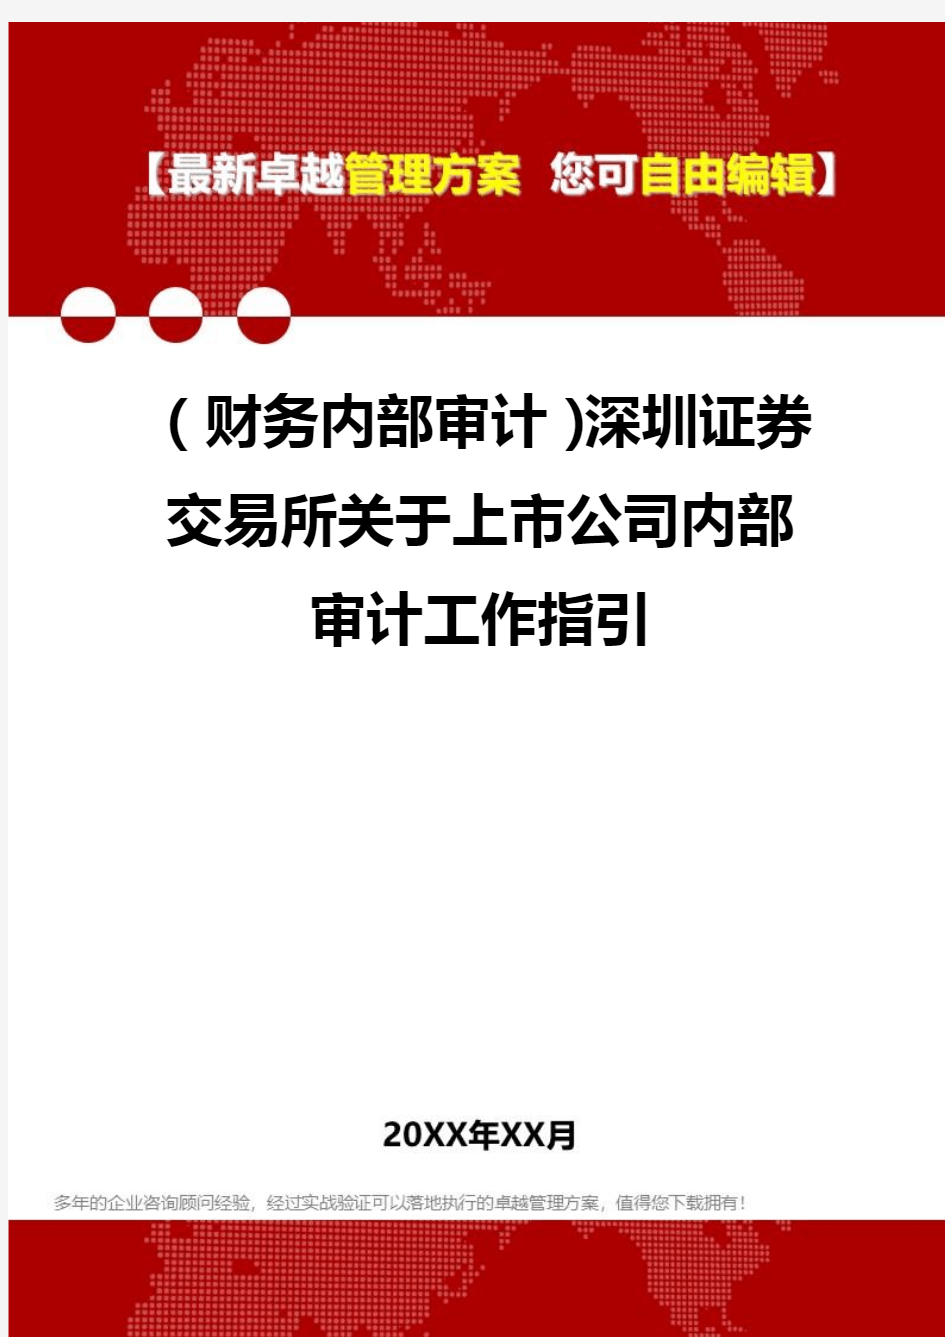 2020年(财务内部审计)深圳证券交易所关于上市公司内部审计工作指引